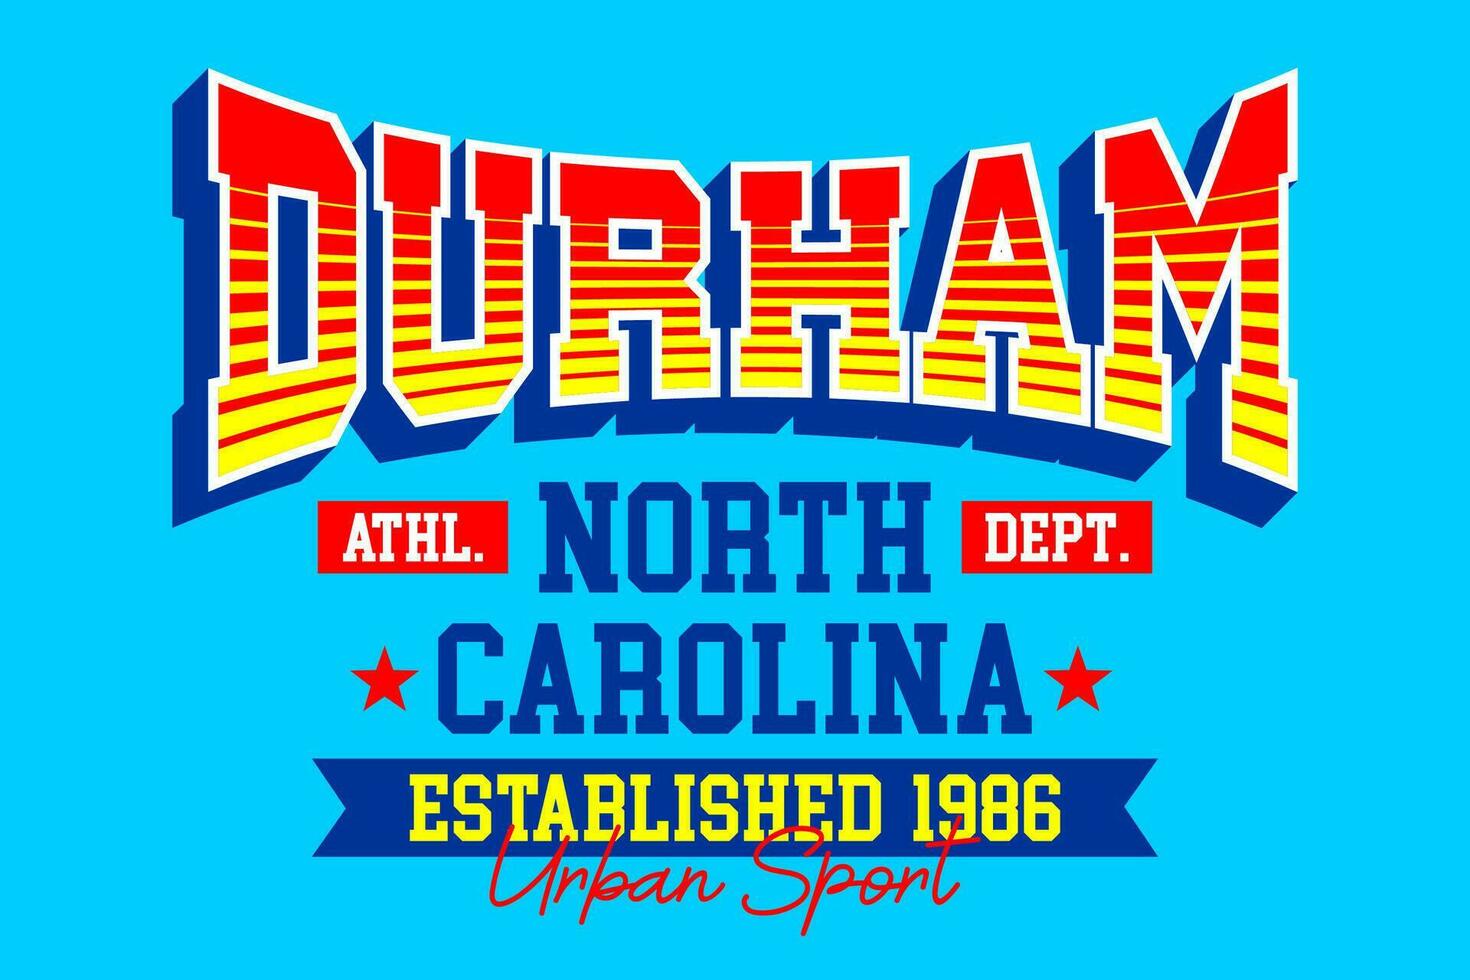 Durham norte carolina vintage faculdade, para impressão em t camisas etc. vetor